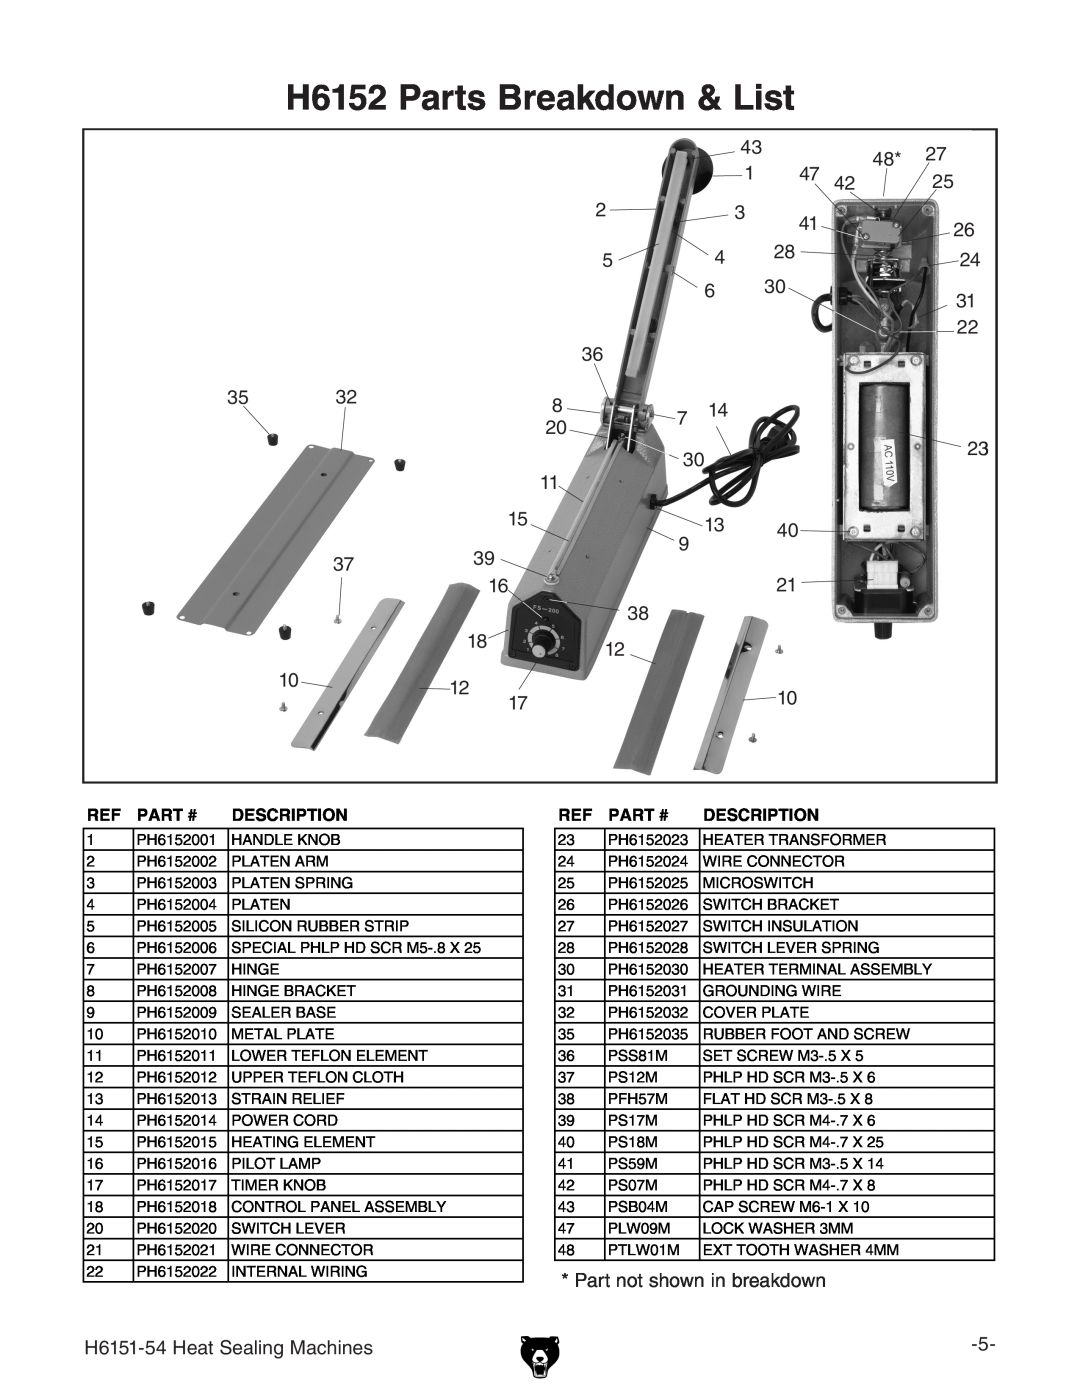 Grizzly H6151-54 specifications H6152 Parts Breakdown & List, Part #, Description 